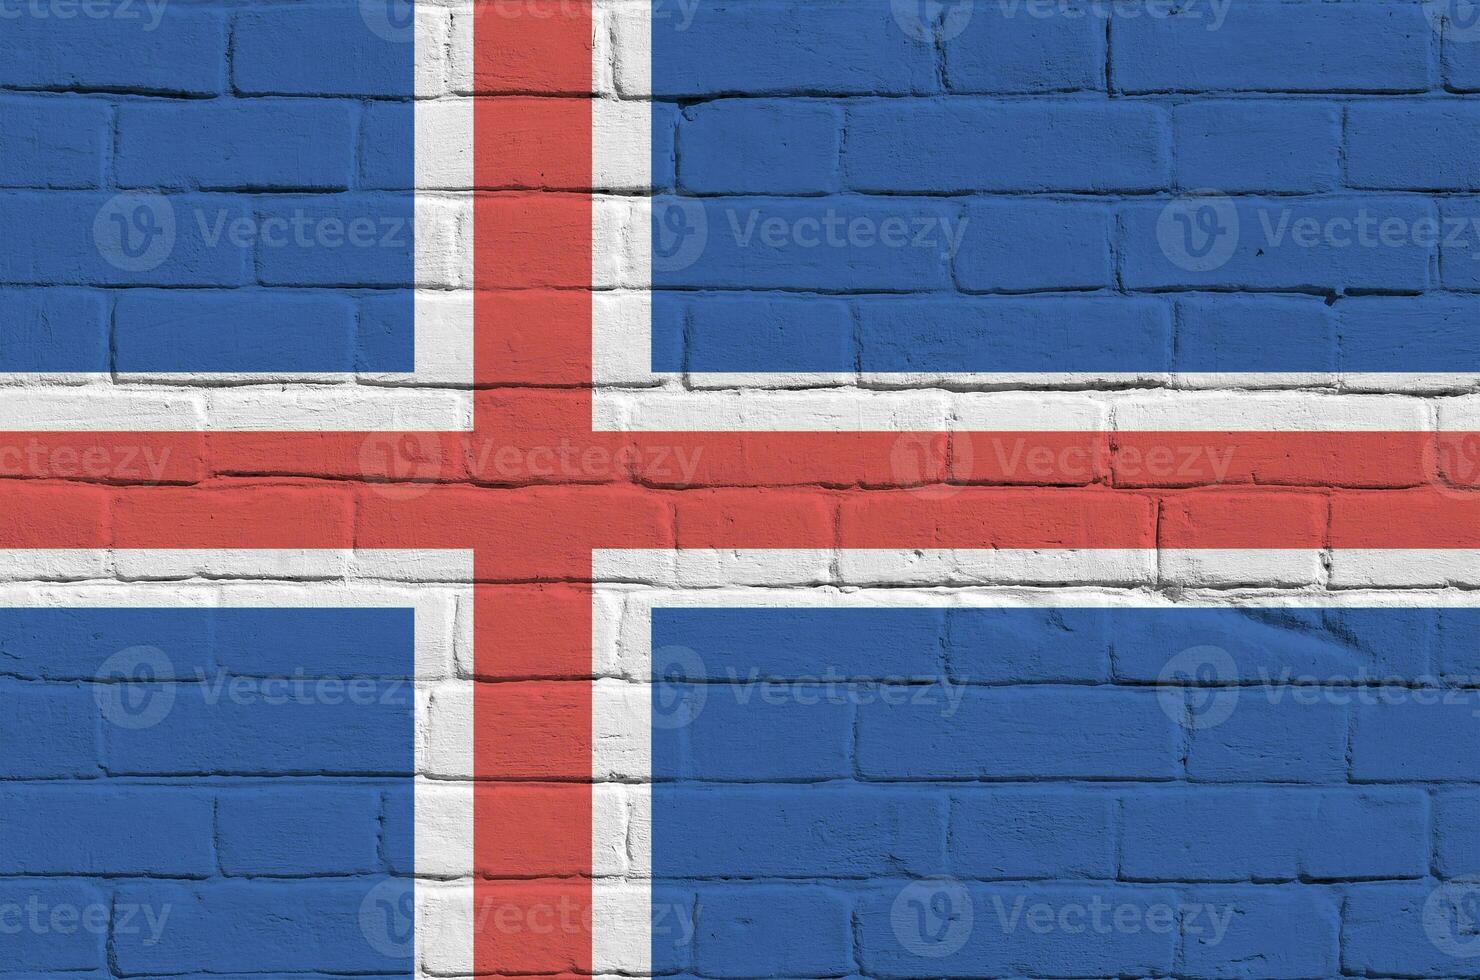 island flagga avbildad i måla färger på gammal tegel vägg. texturerad baner på stor tegel vägg murverk bakgrund foto